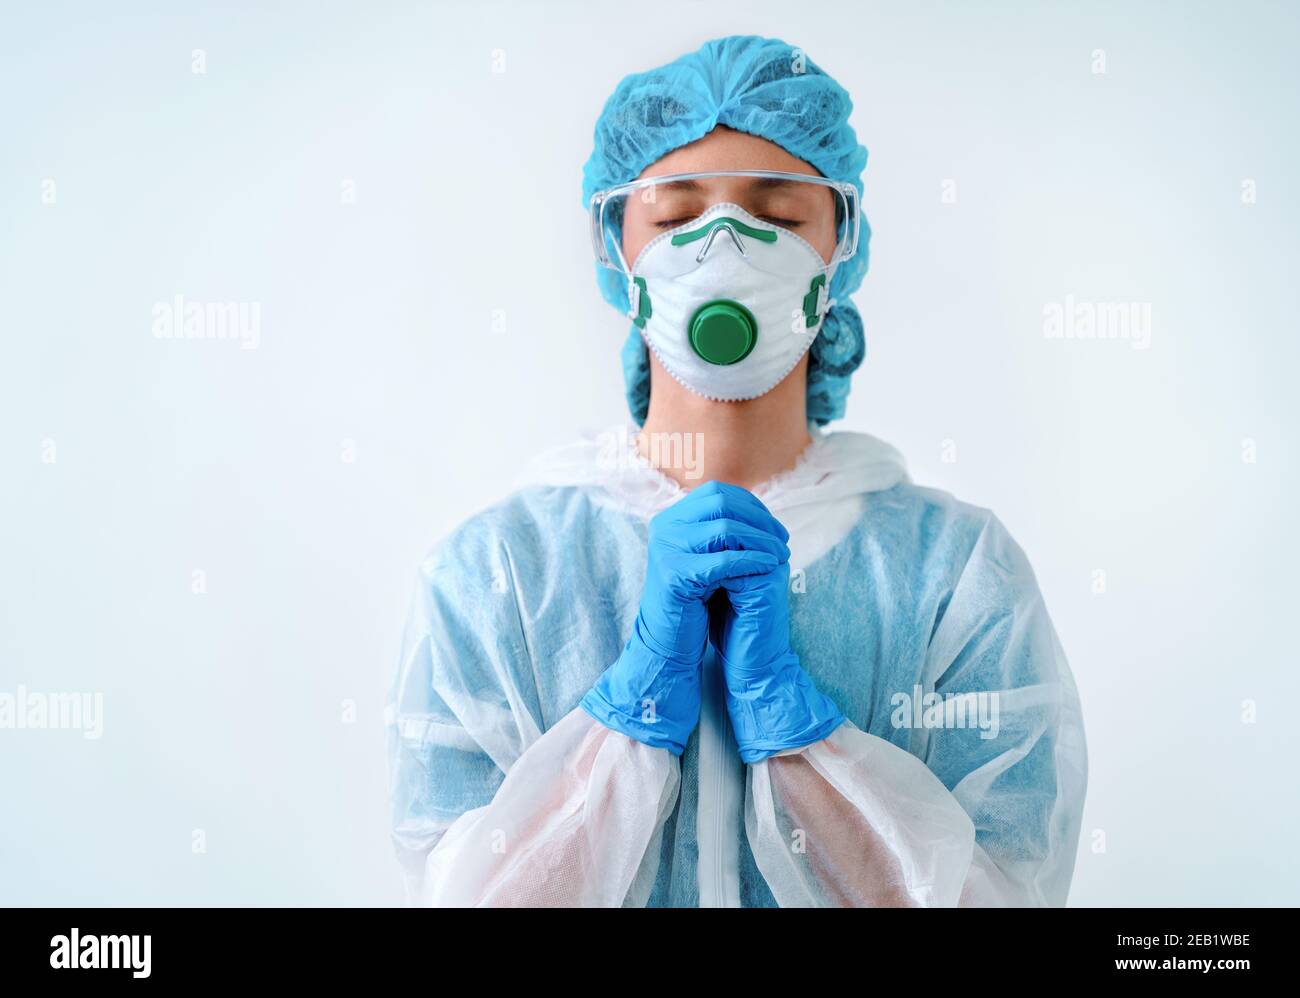 Operatore sanitario in tuta protettiva e maschera medica mettendo le mani insieme nella preghiera Foto Stock